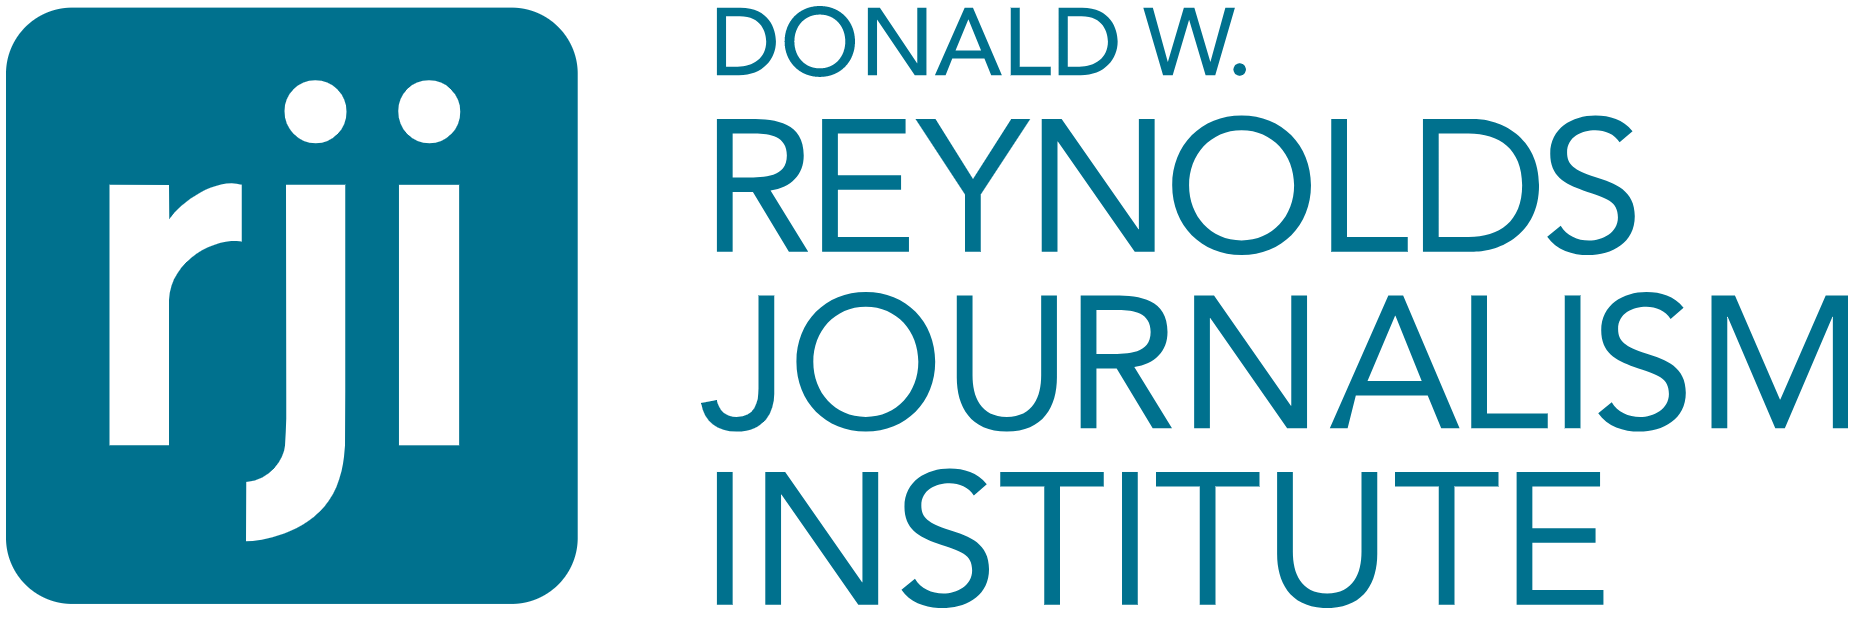 Programme de bourses 2019 pour les journalistes du Donald W. Reynolds Journalism Institute – Université du Missouri, États-Unis (financé)